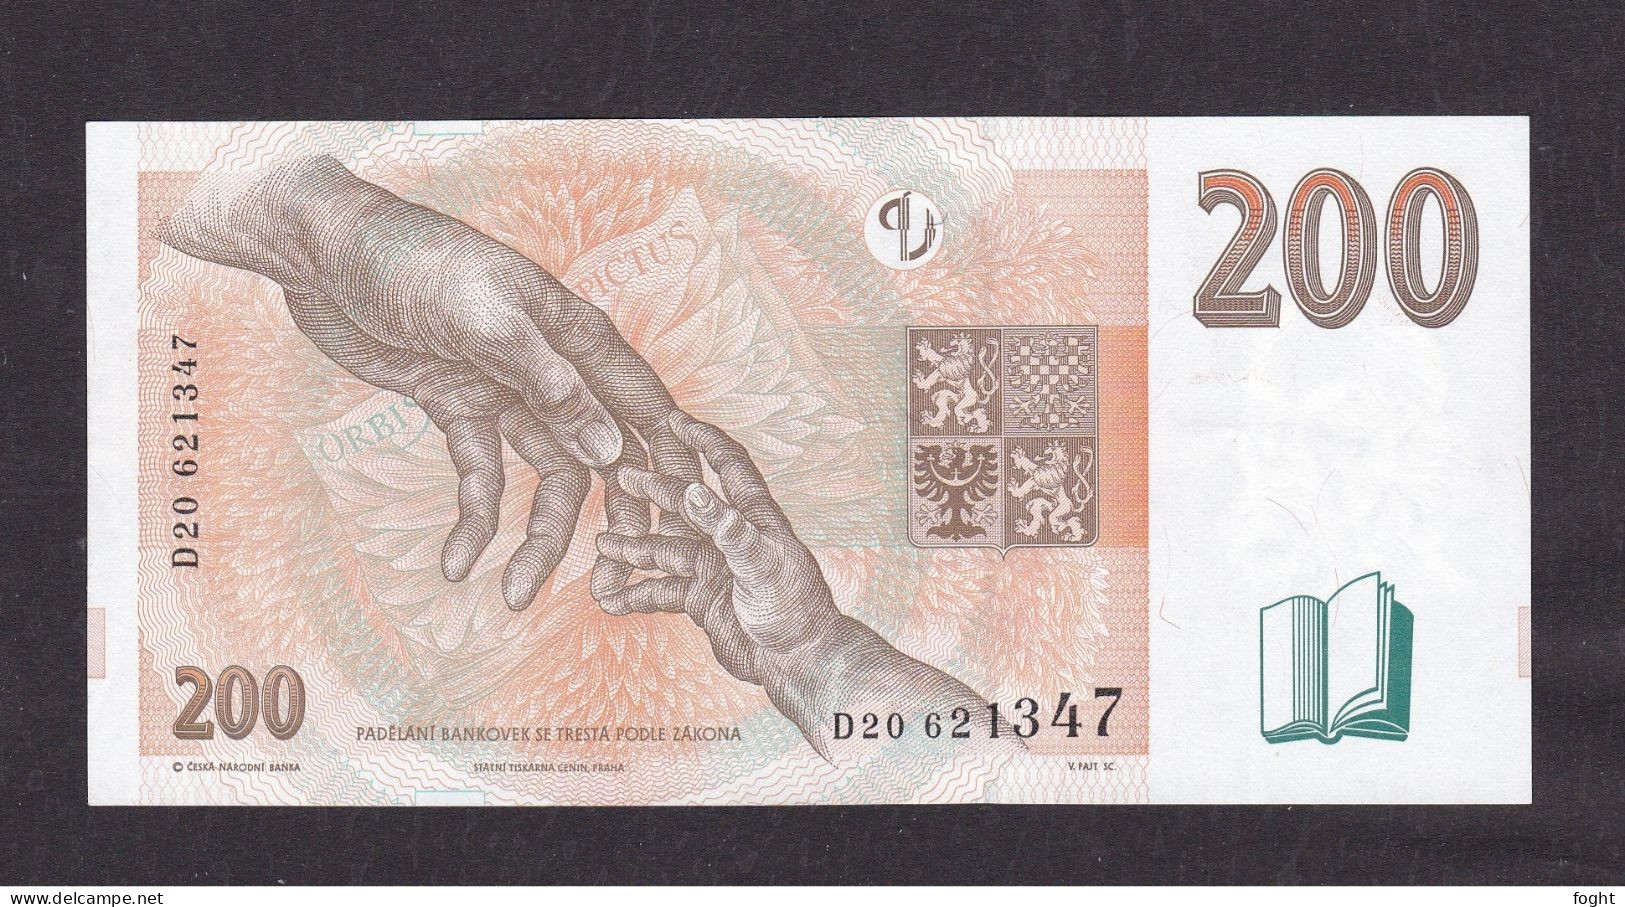 1998 Czech Republic Czech National Bank Banknote 200 Korun,P#19B - Tchéquie